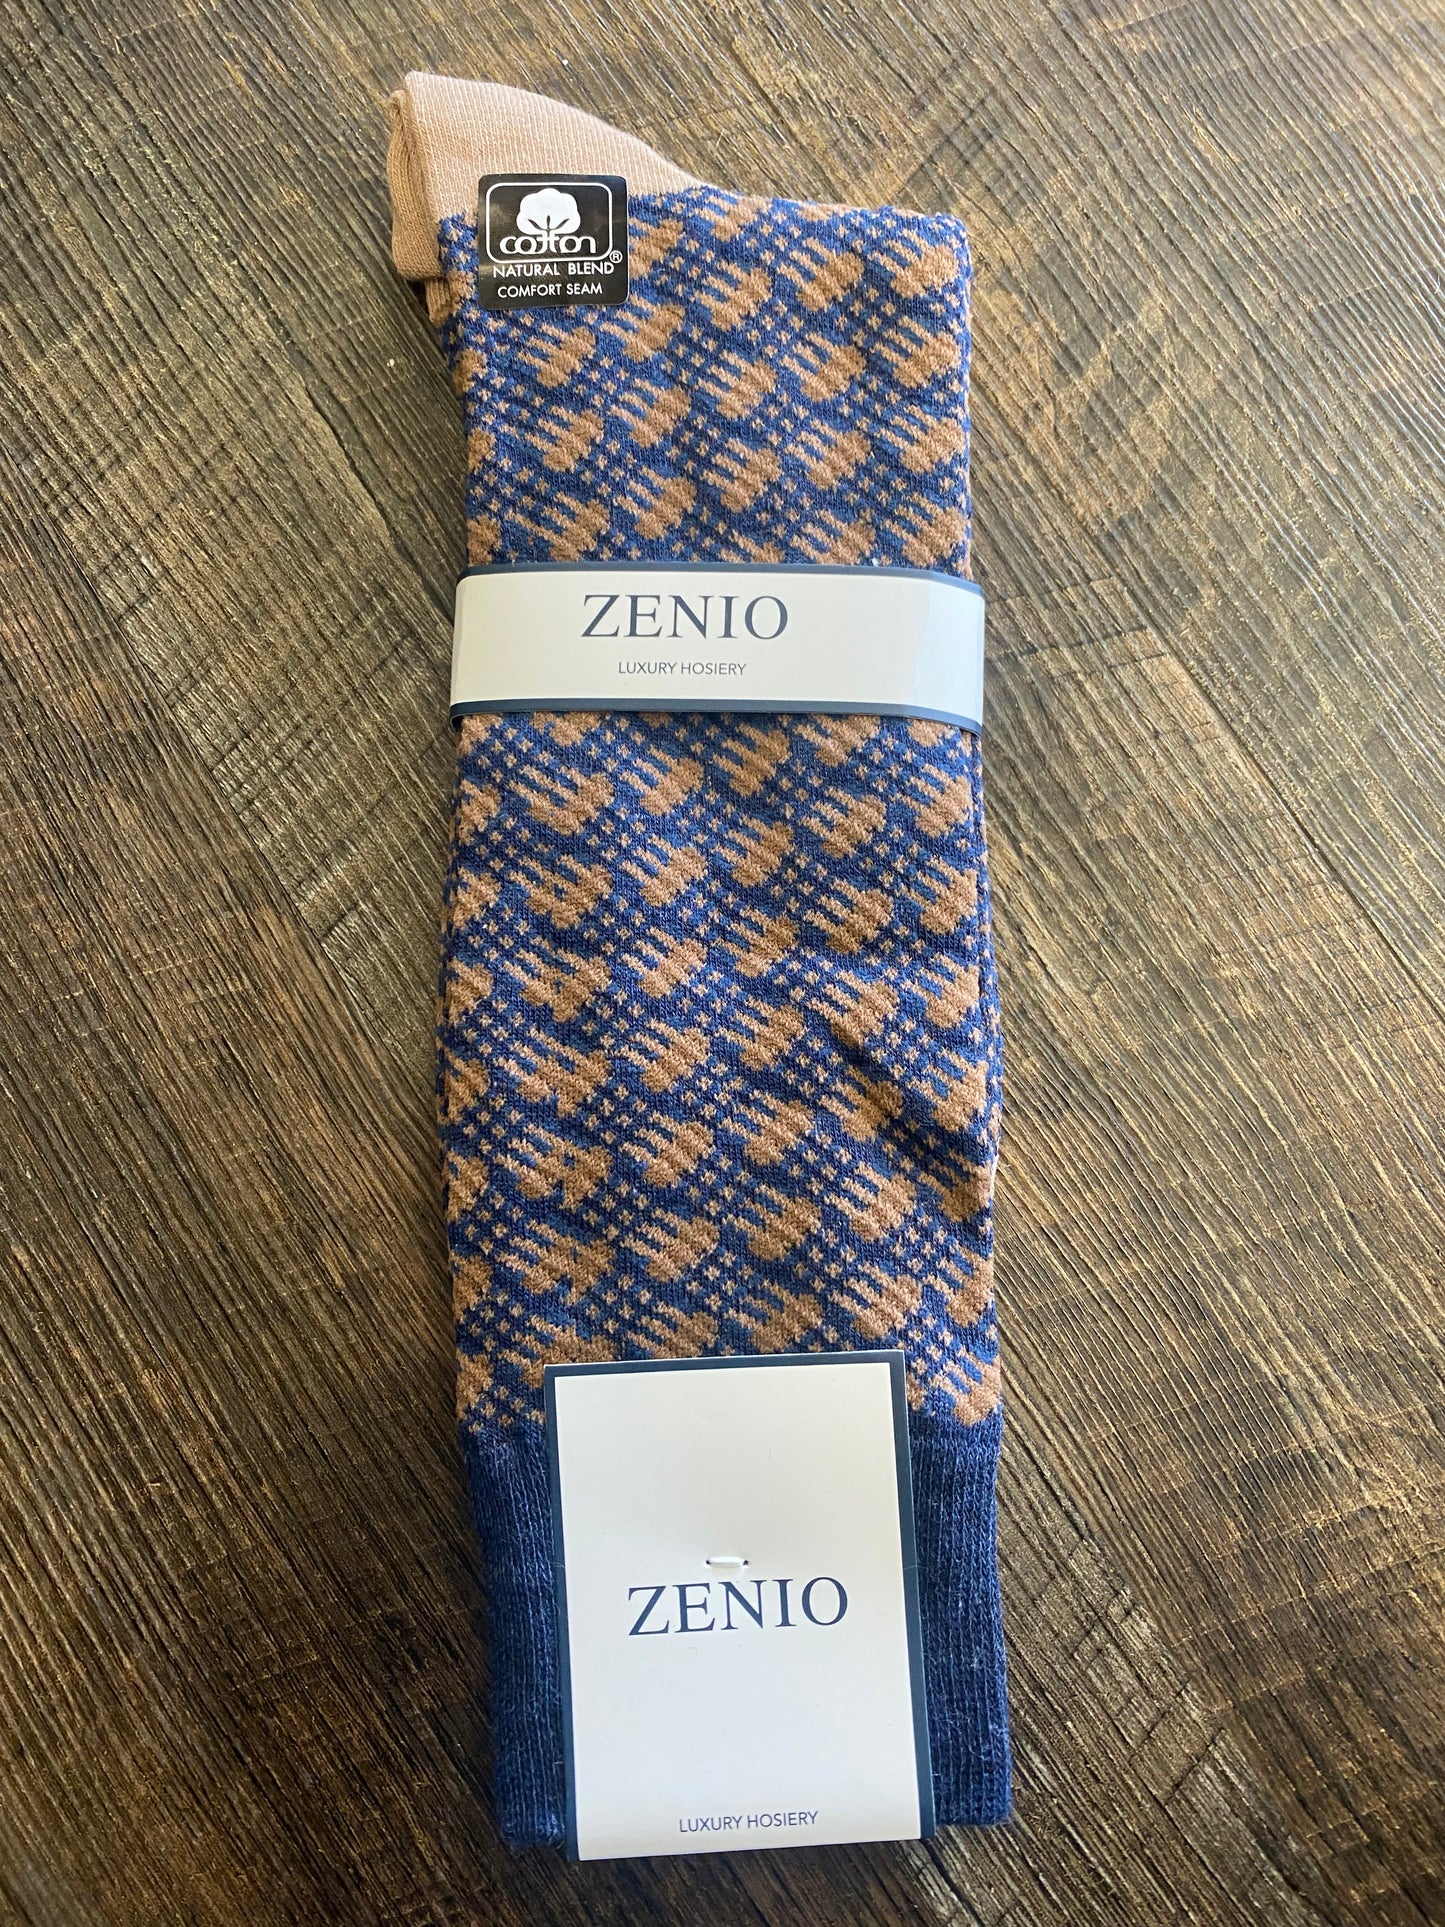 Zenio Luxury Hosery